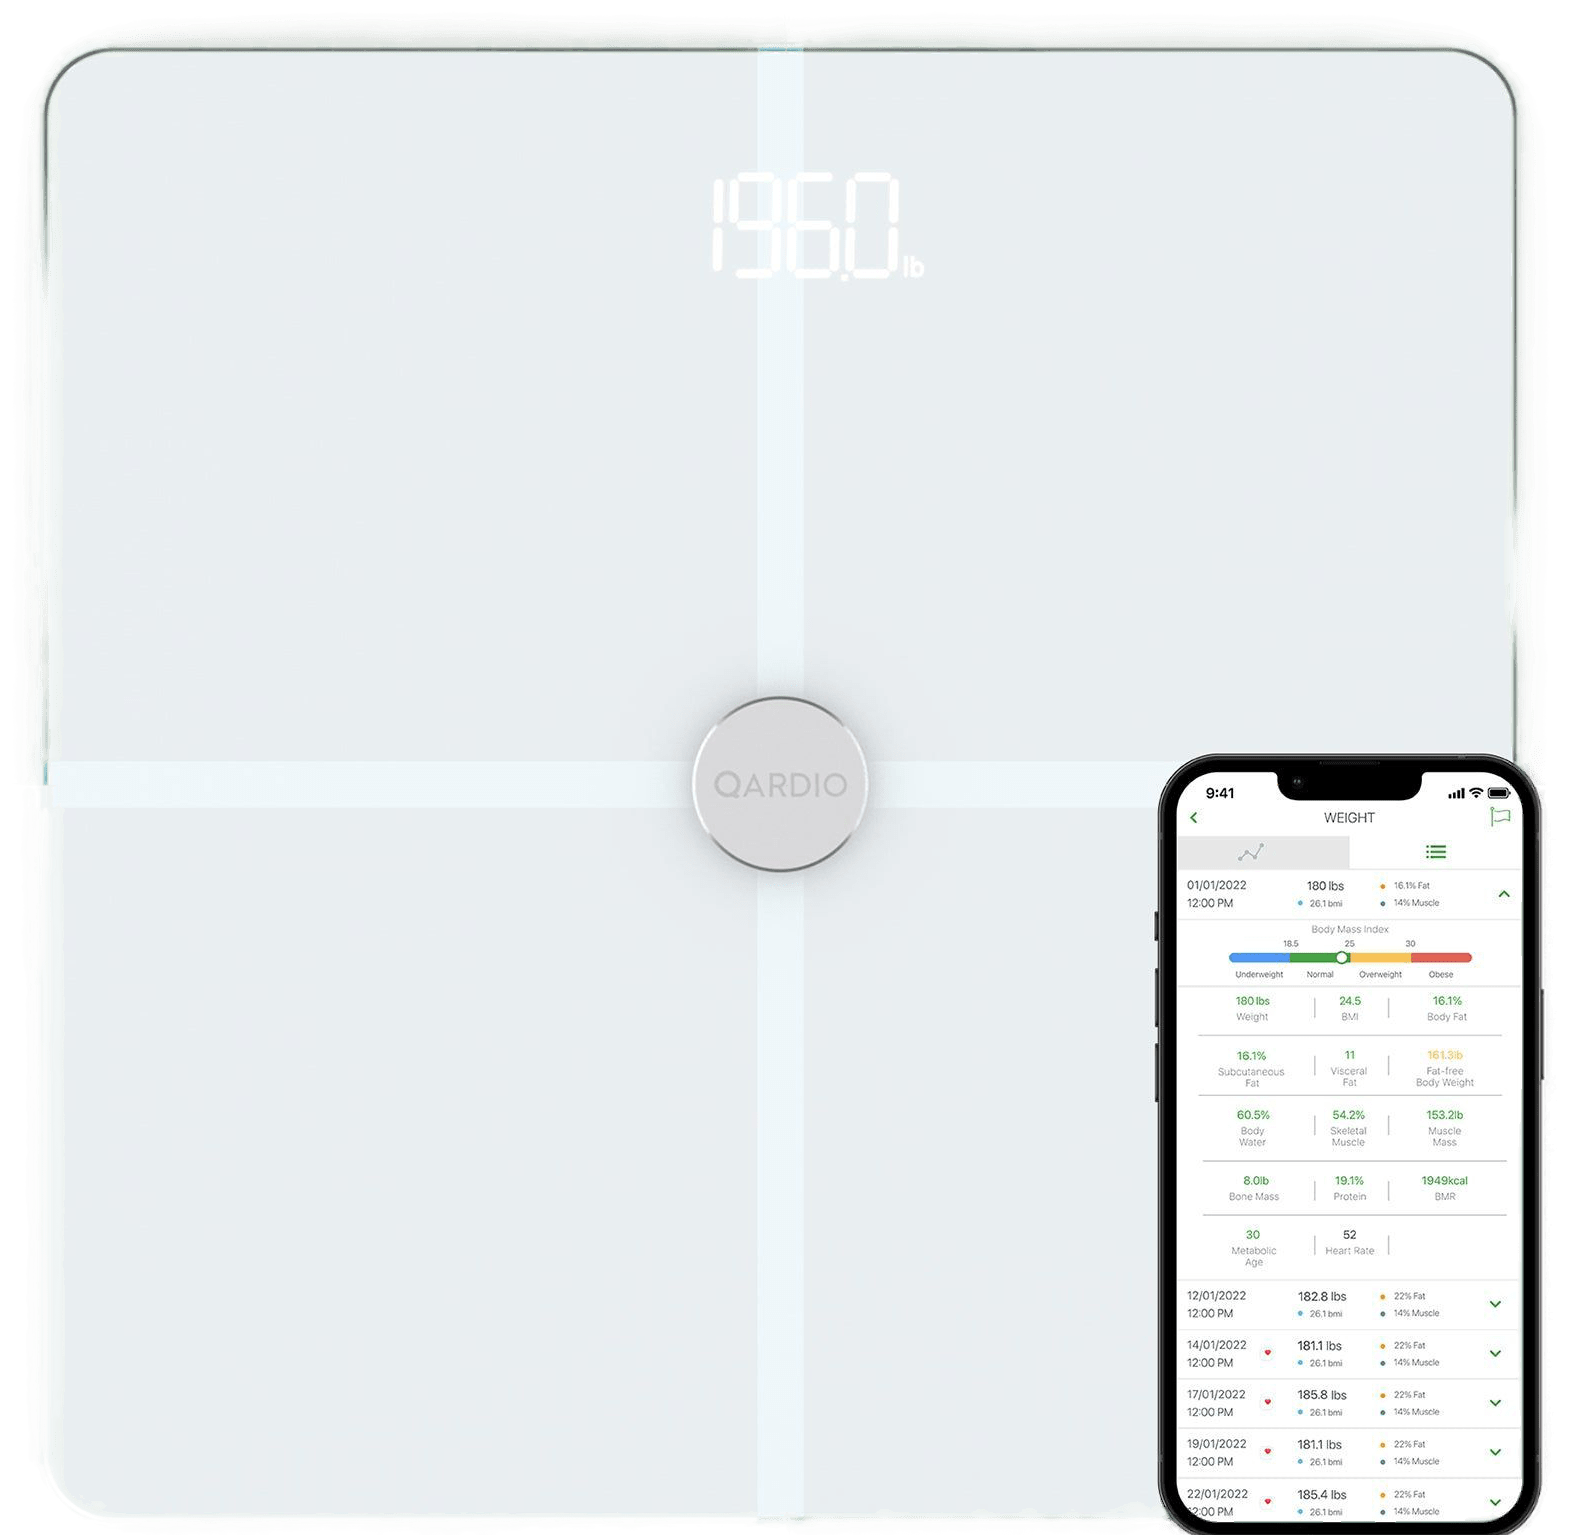 QardioBase X - Smart Body Fat scale - 12 Values